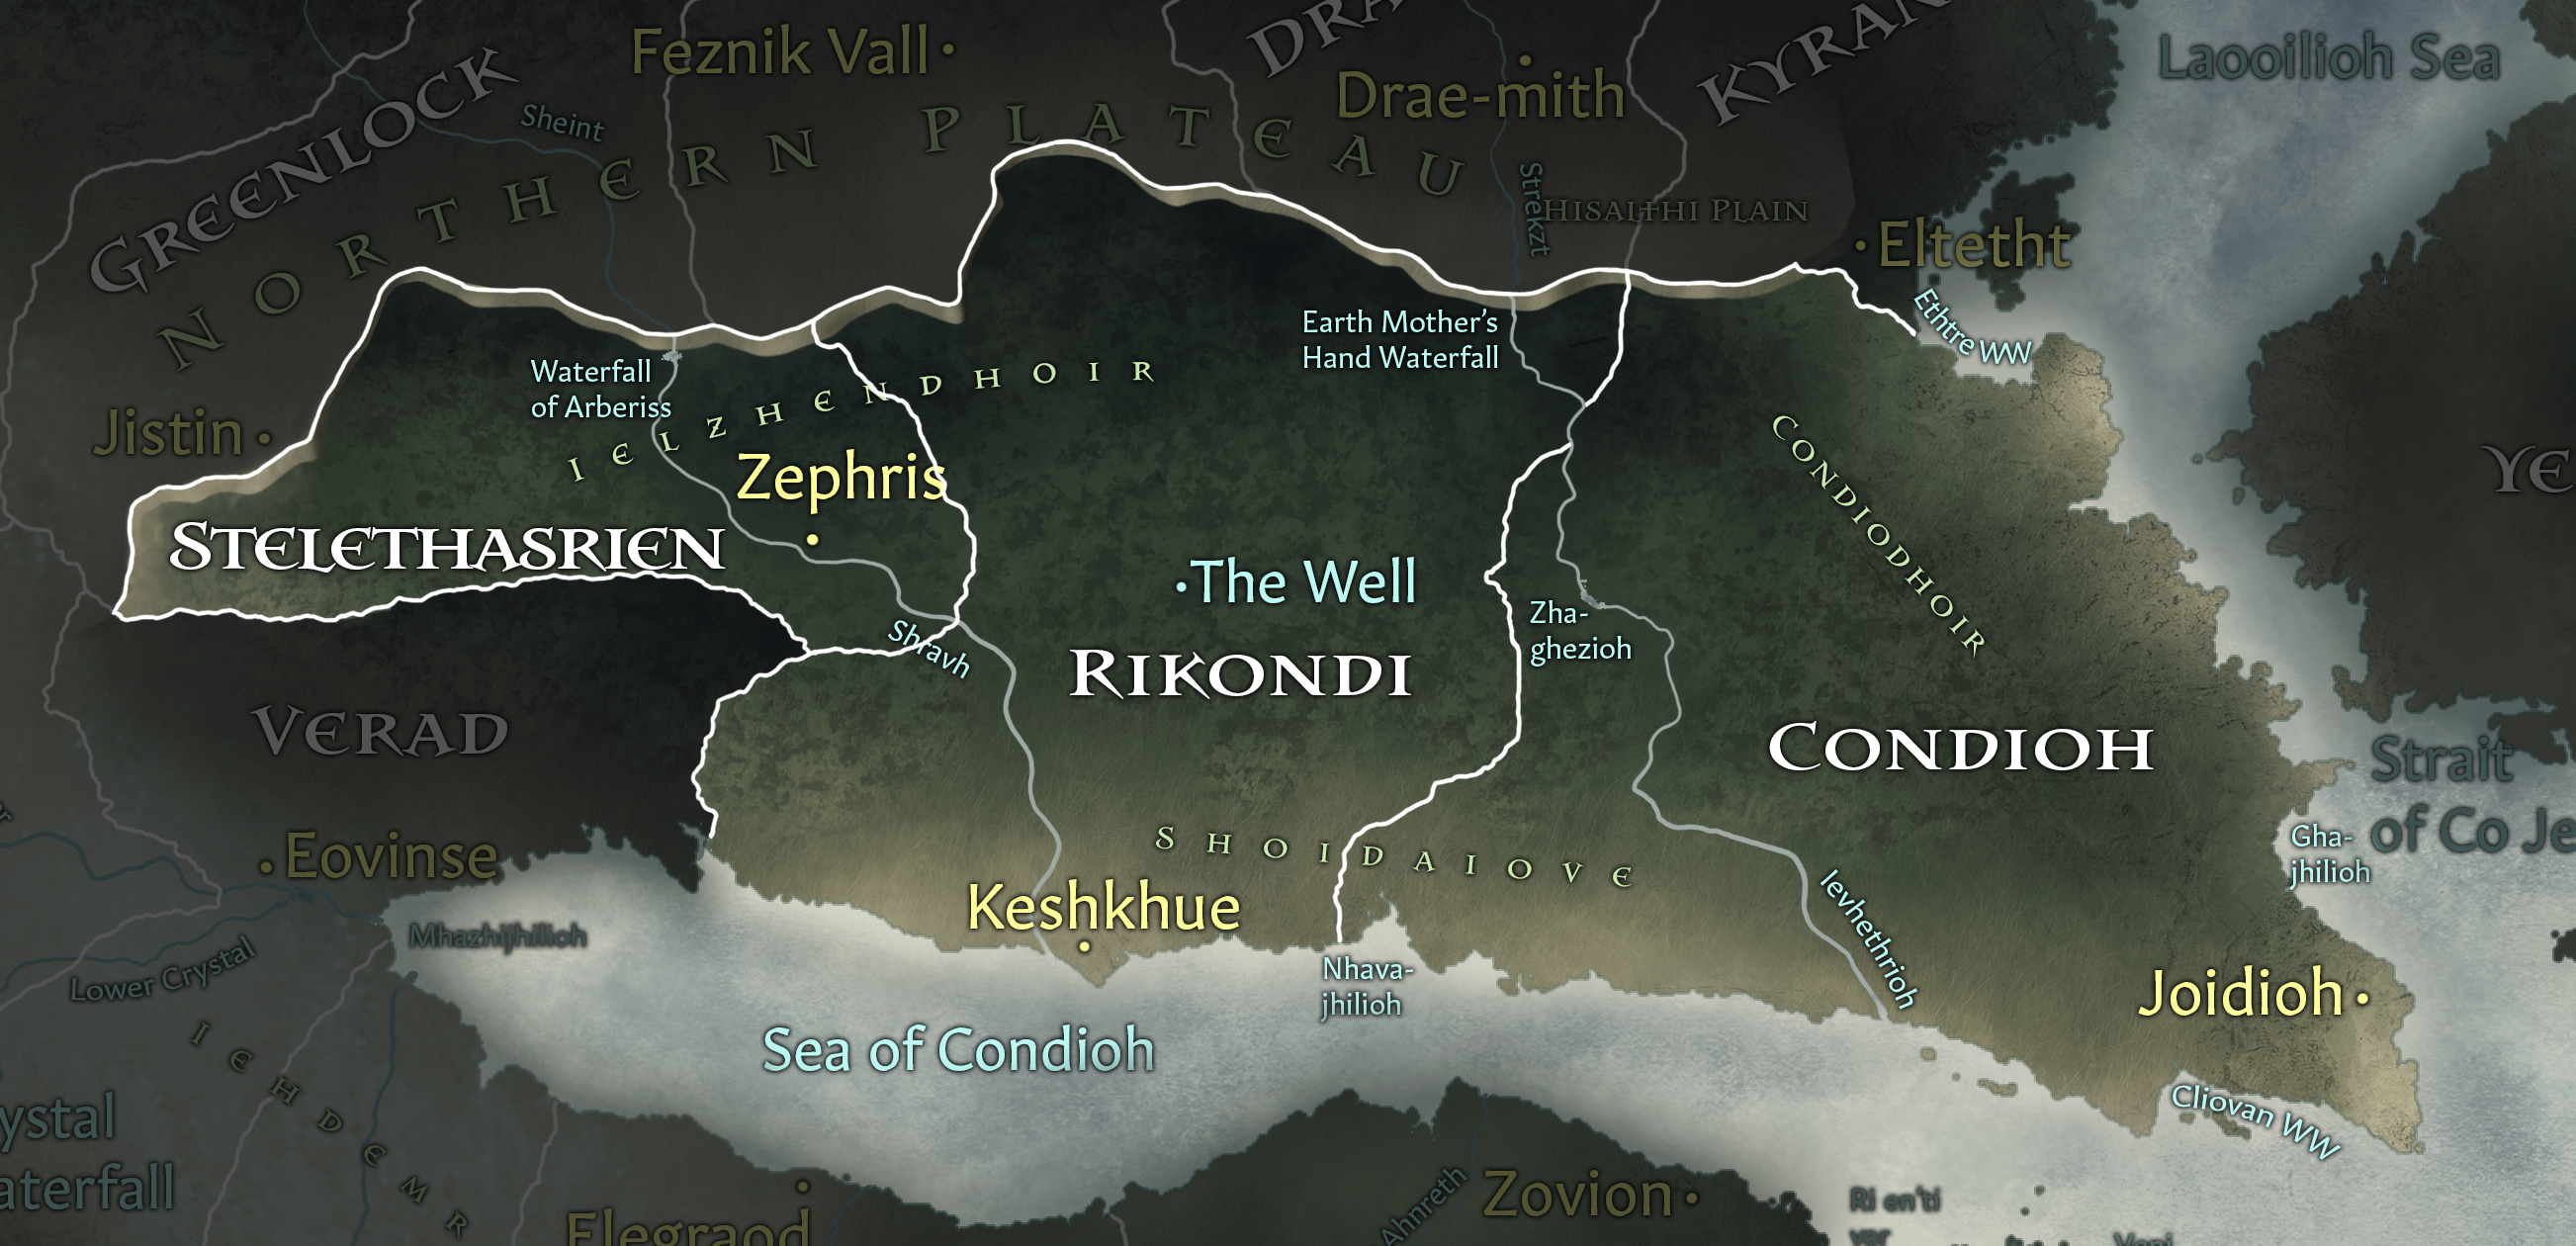 Ga Iniria lands